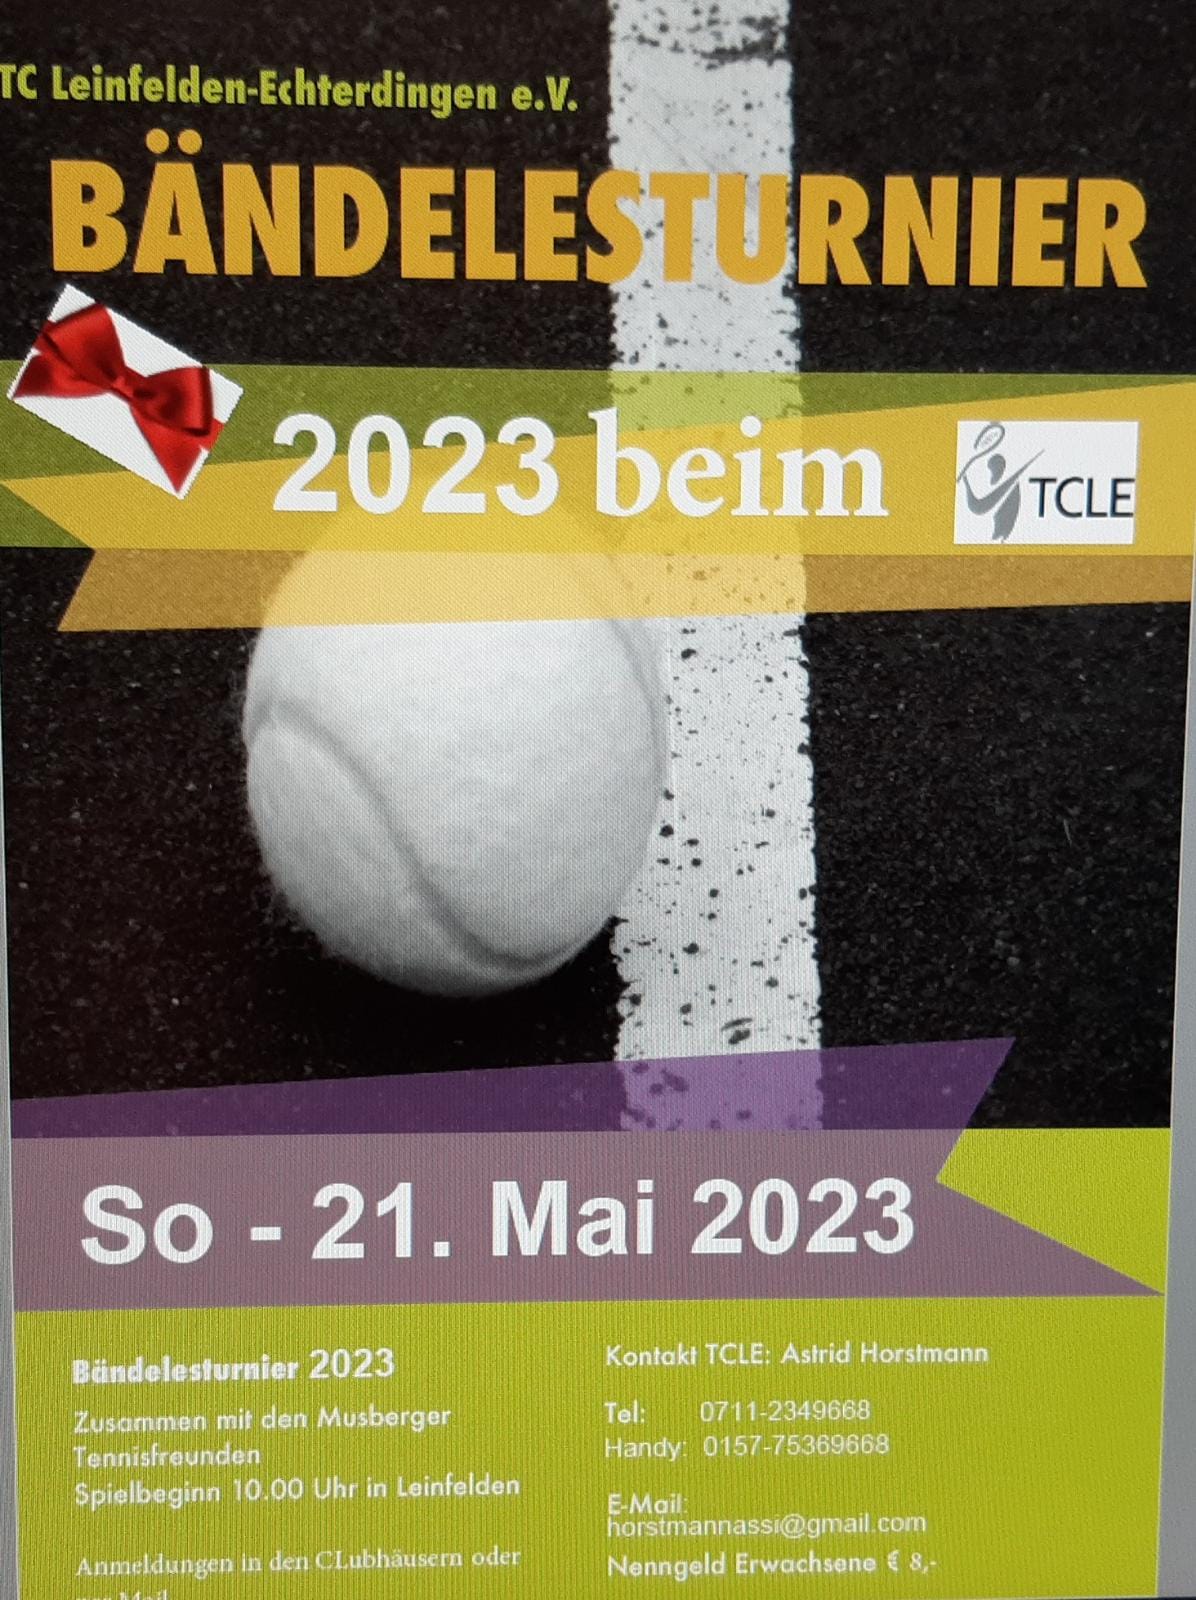 Bändelesturnier am 21. Mai 2023 bei unseren Tennisfreunden in Leinfelden